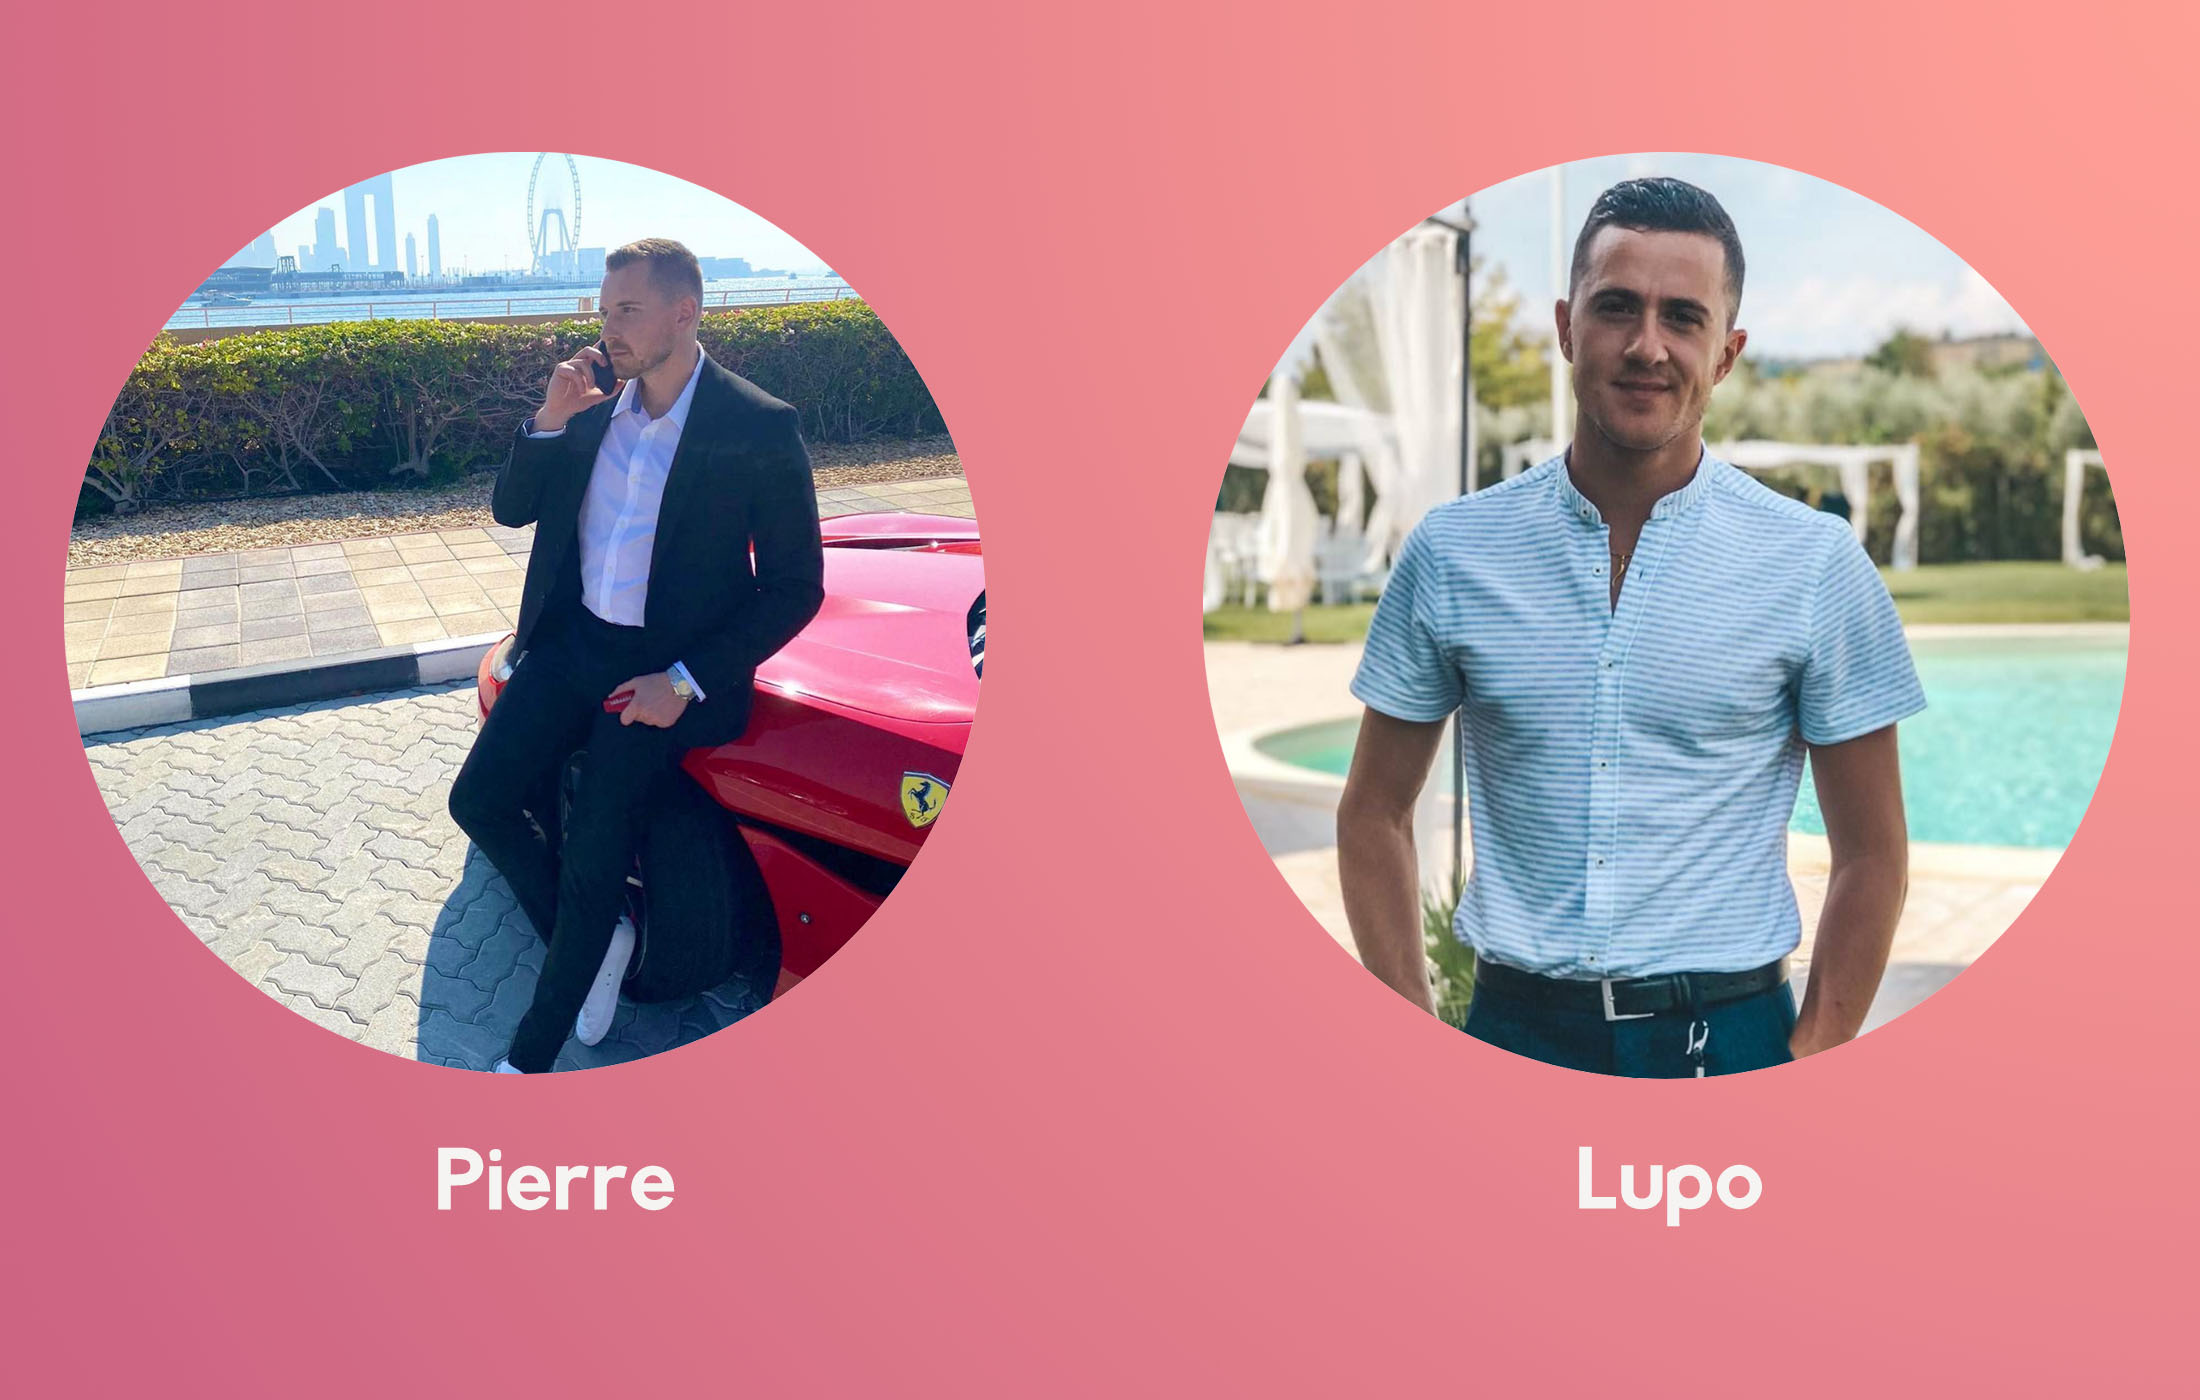 Les formateurs de l'incontournable formation Cash Content Agency Pierre et Lupo